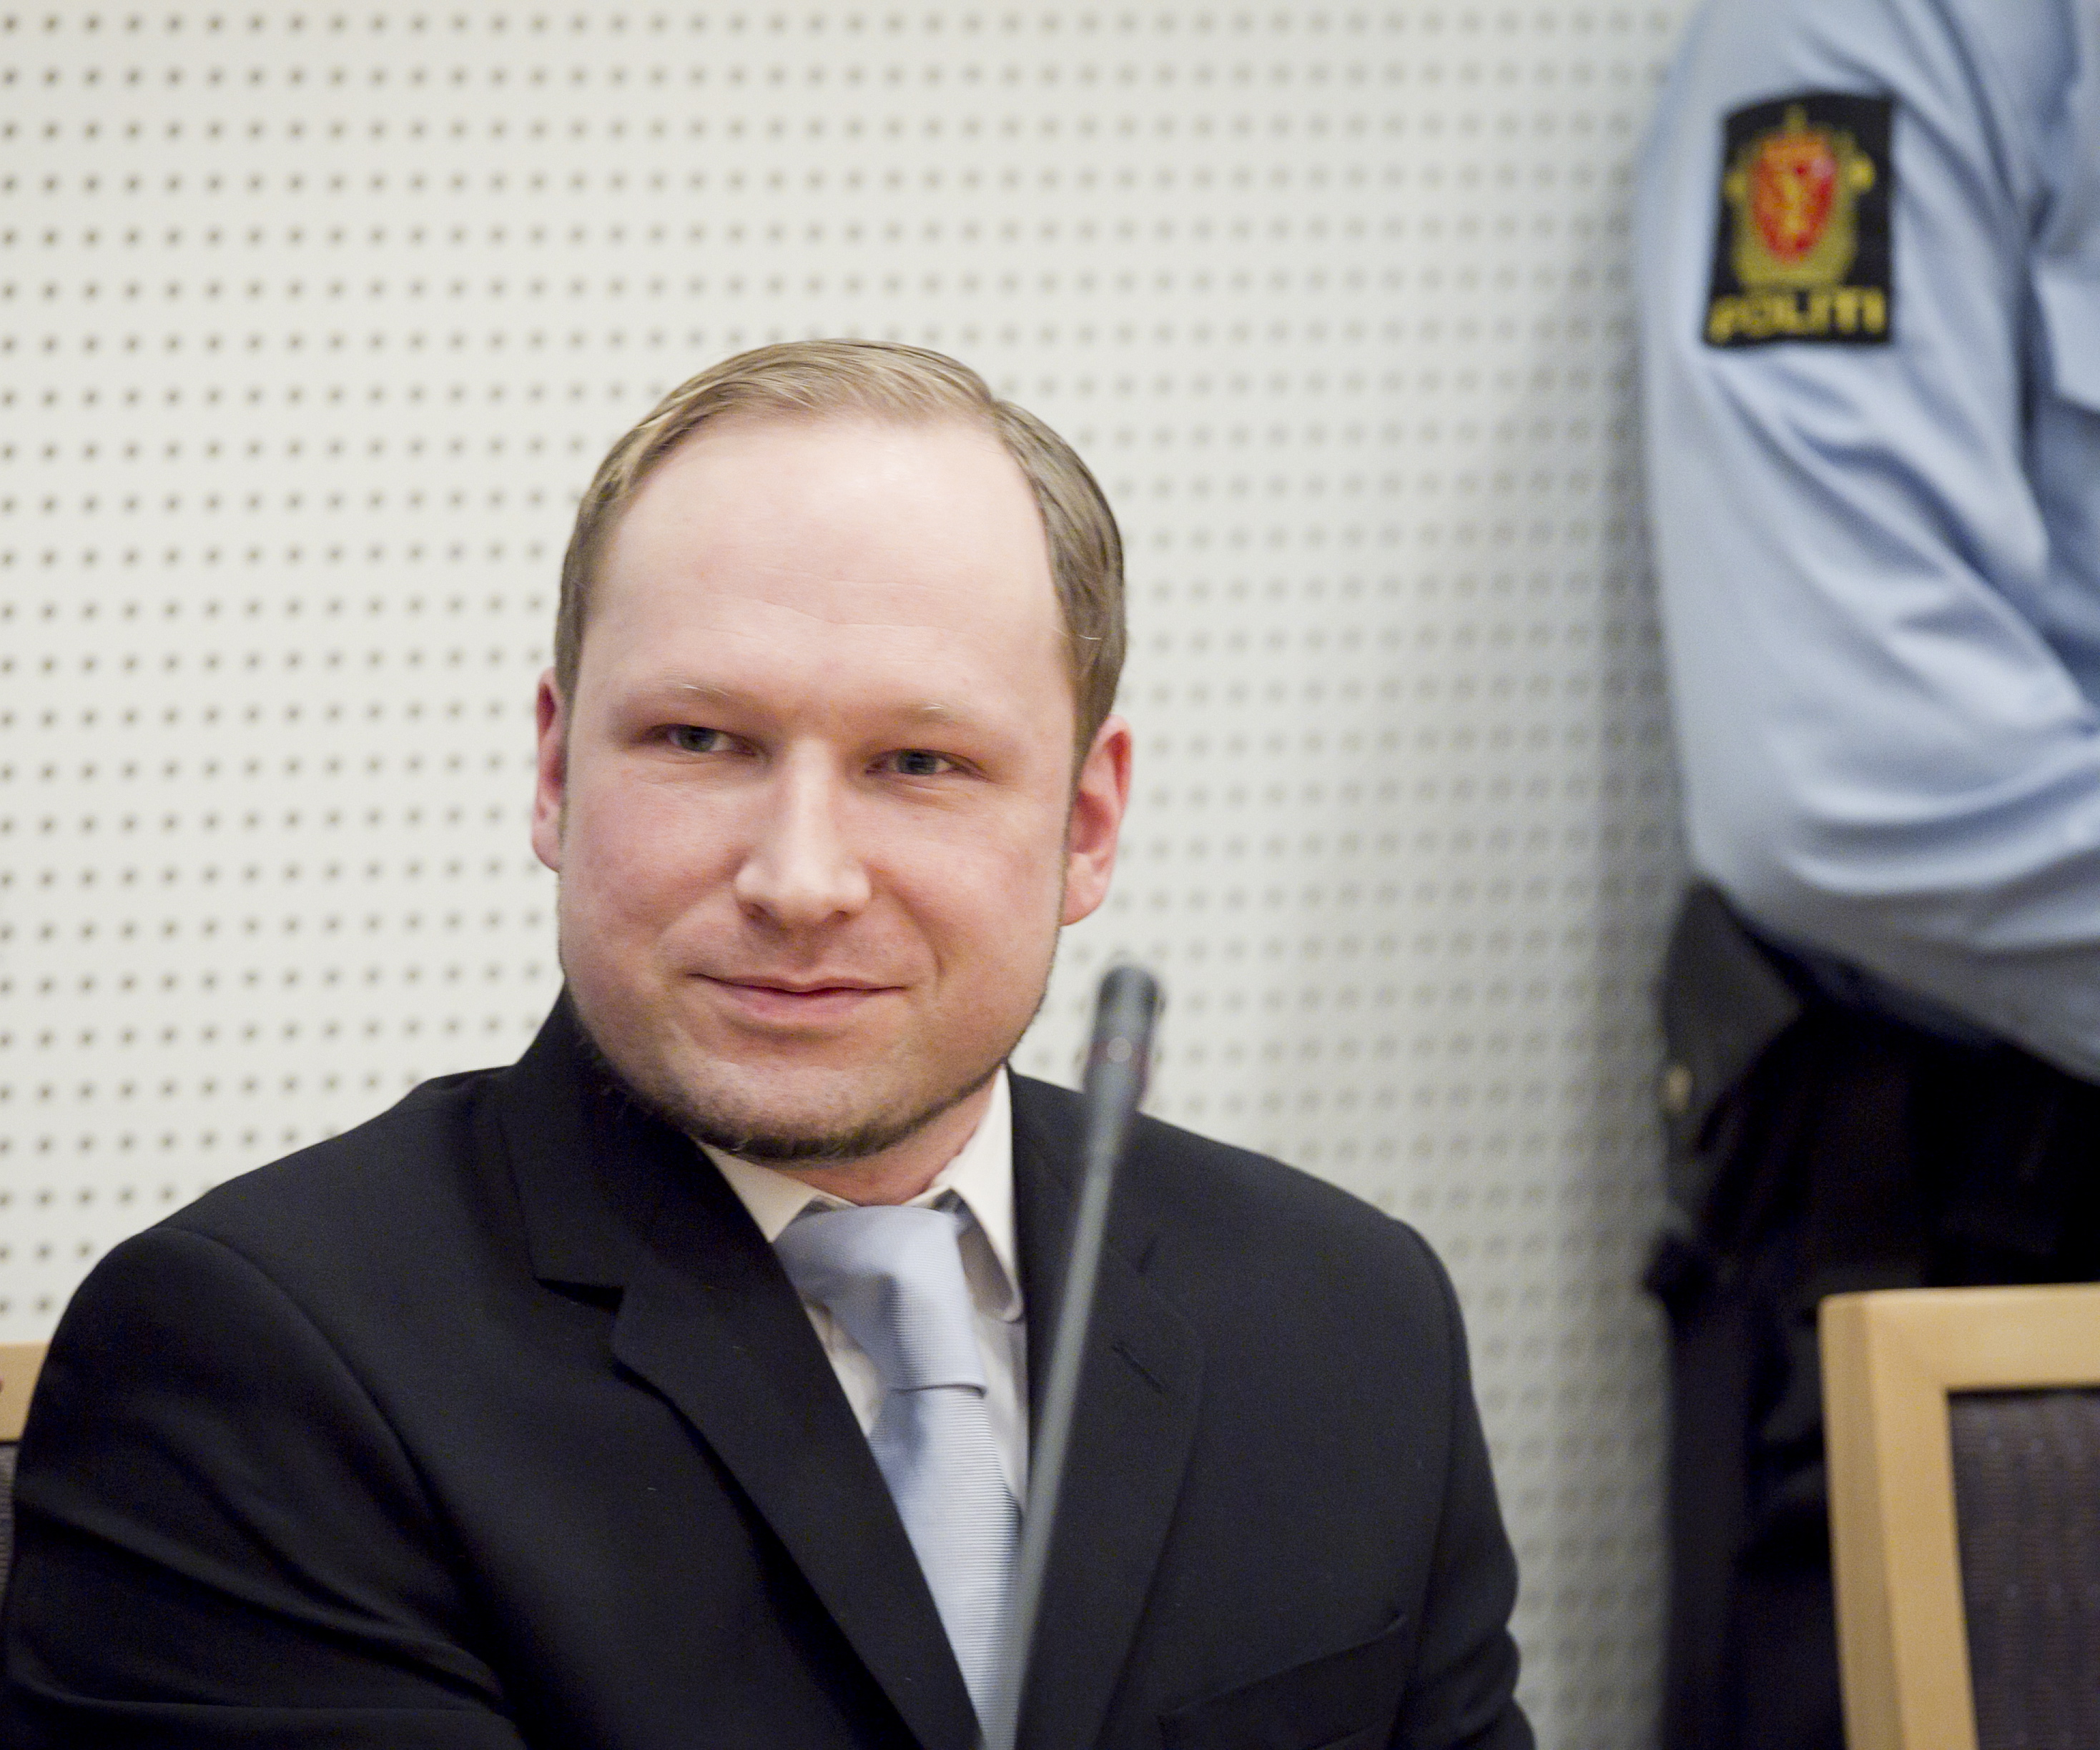 Oslo, Anders Behring Breivik, Norge, Utøya, Terrordåd, Bombattentat